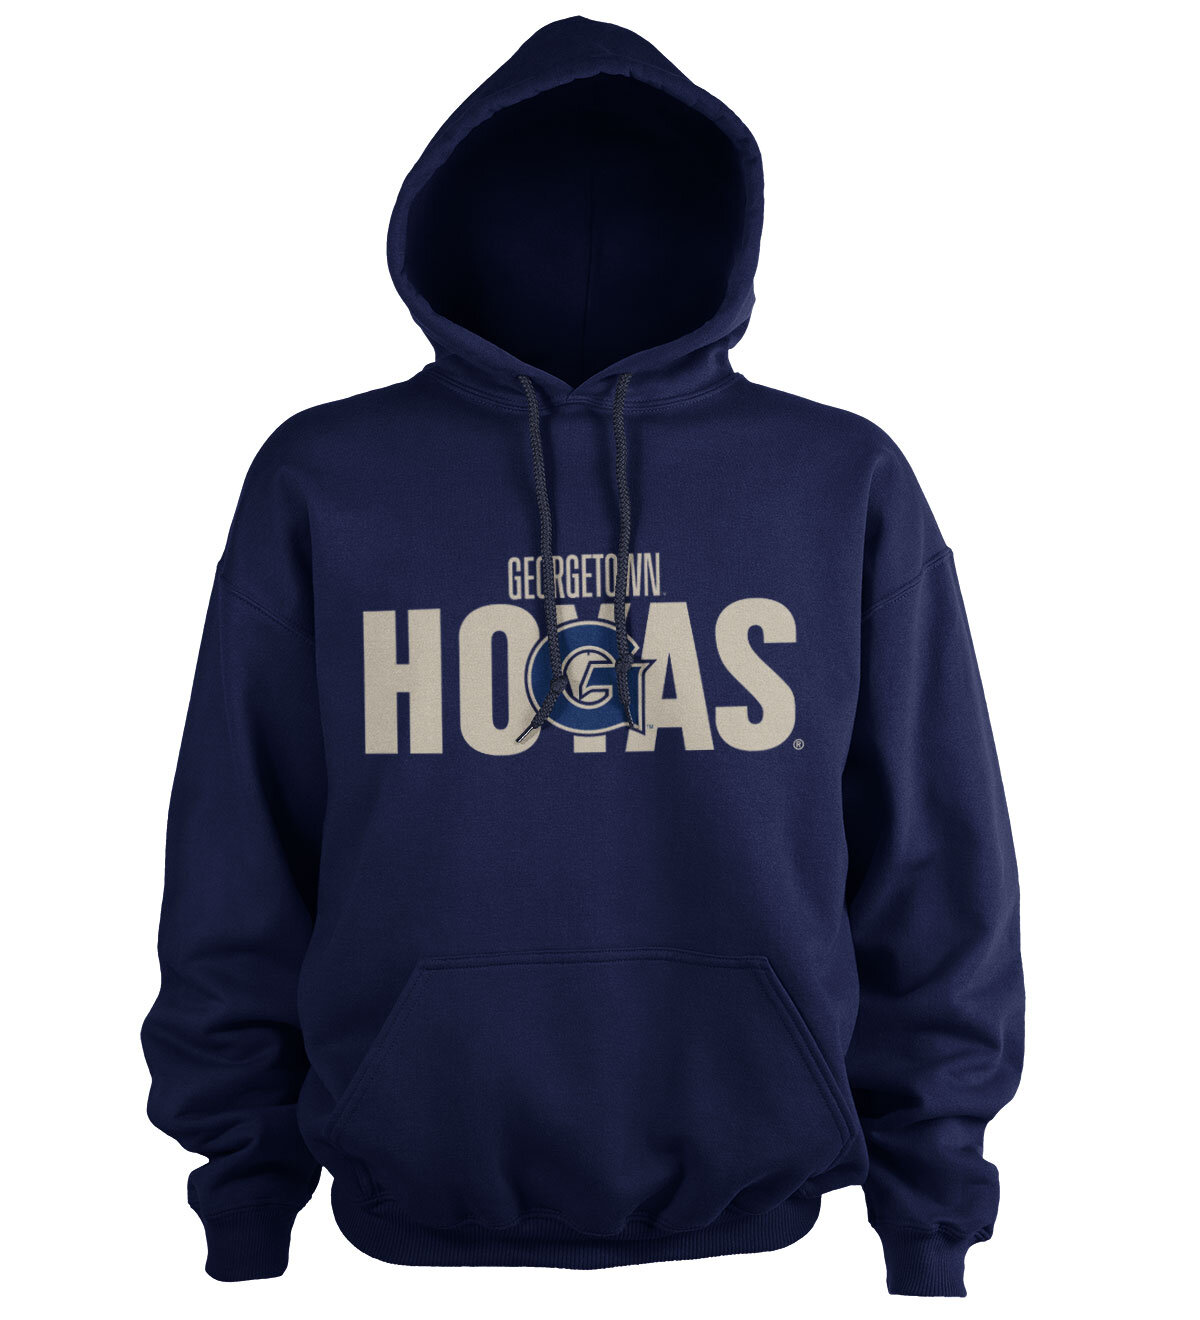 Georgetown Hoyas Hoodie